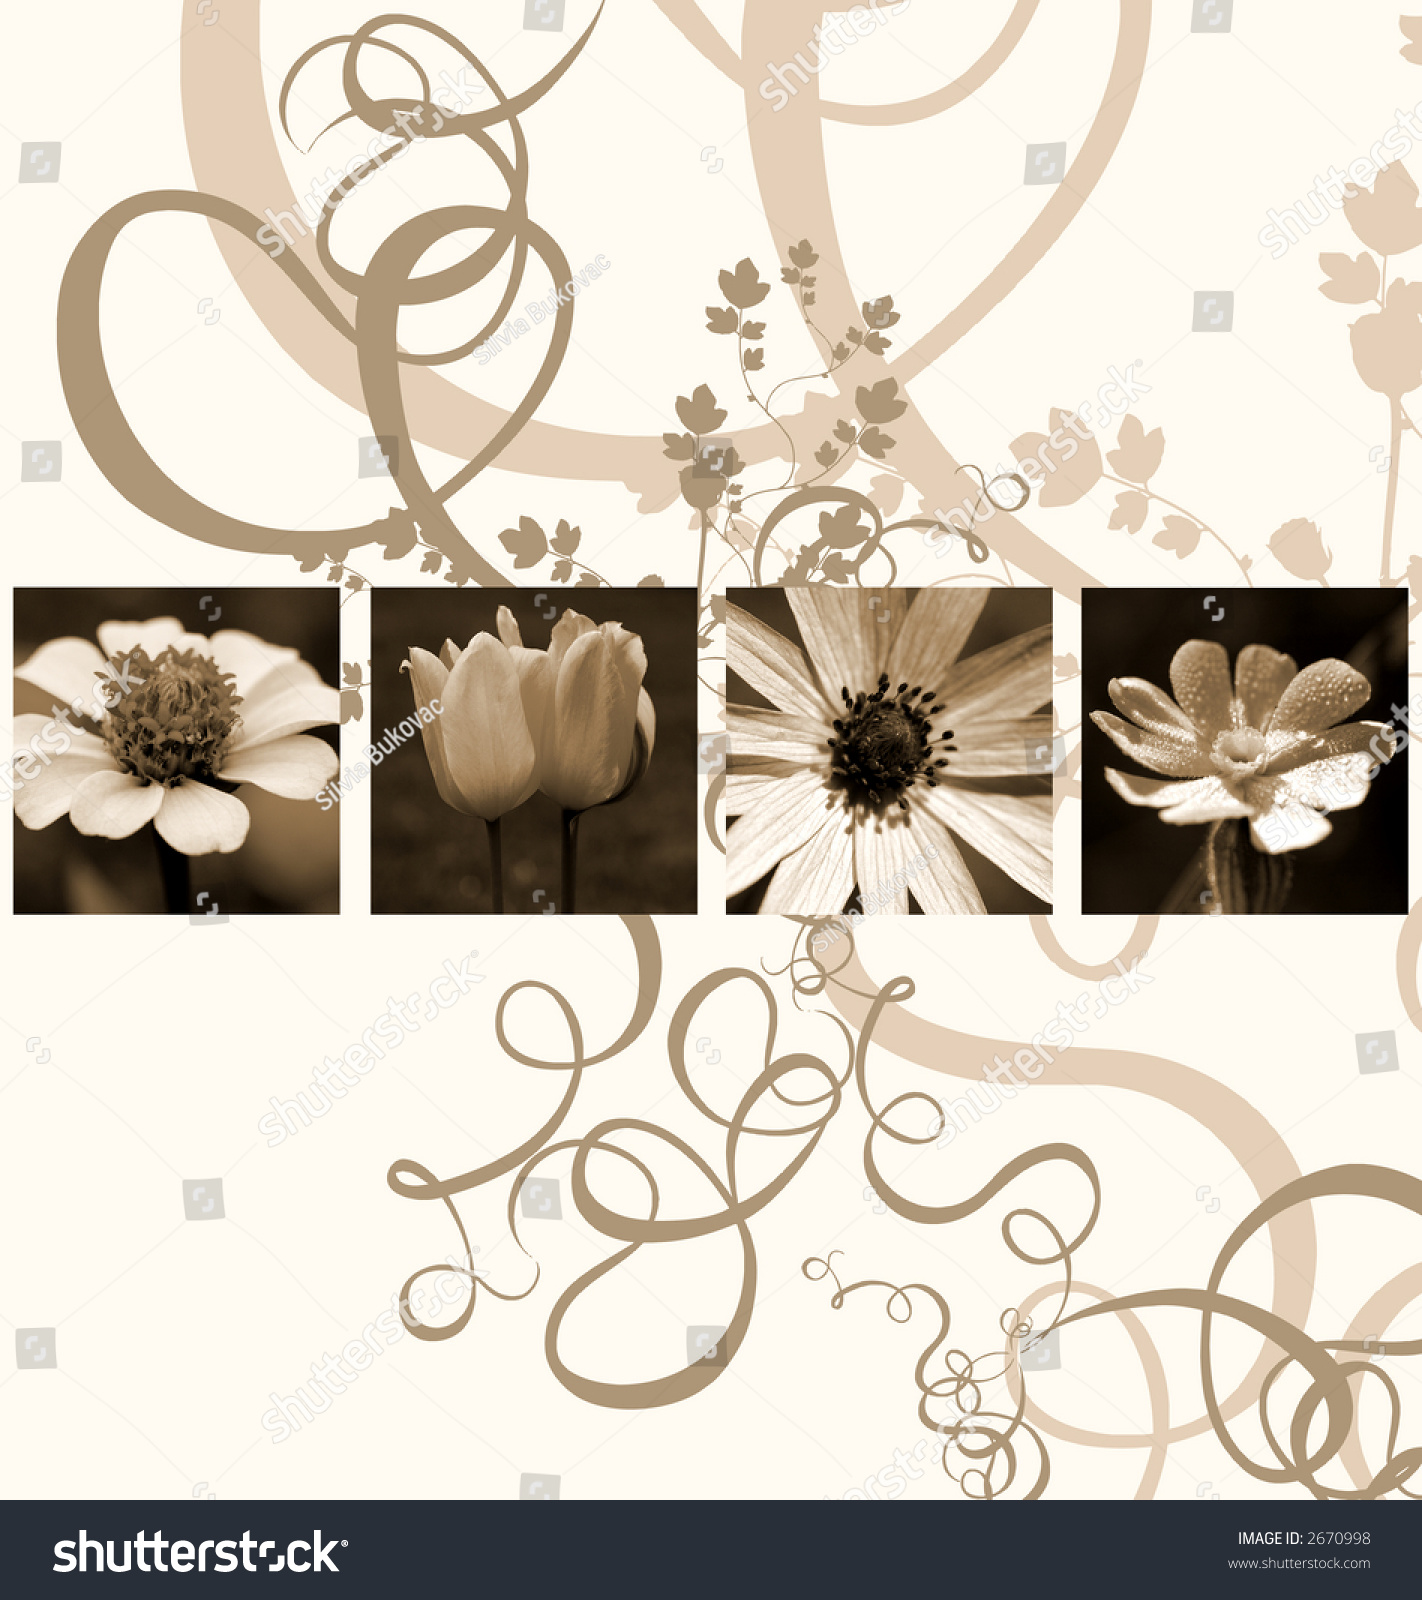 Flower Background Stock Illustration 2670998 - Shutterstock